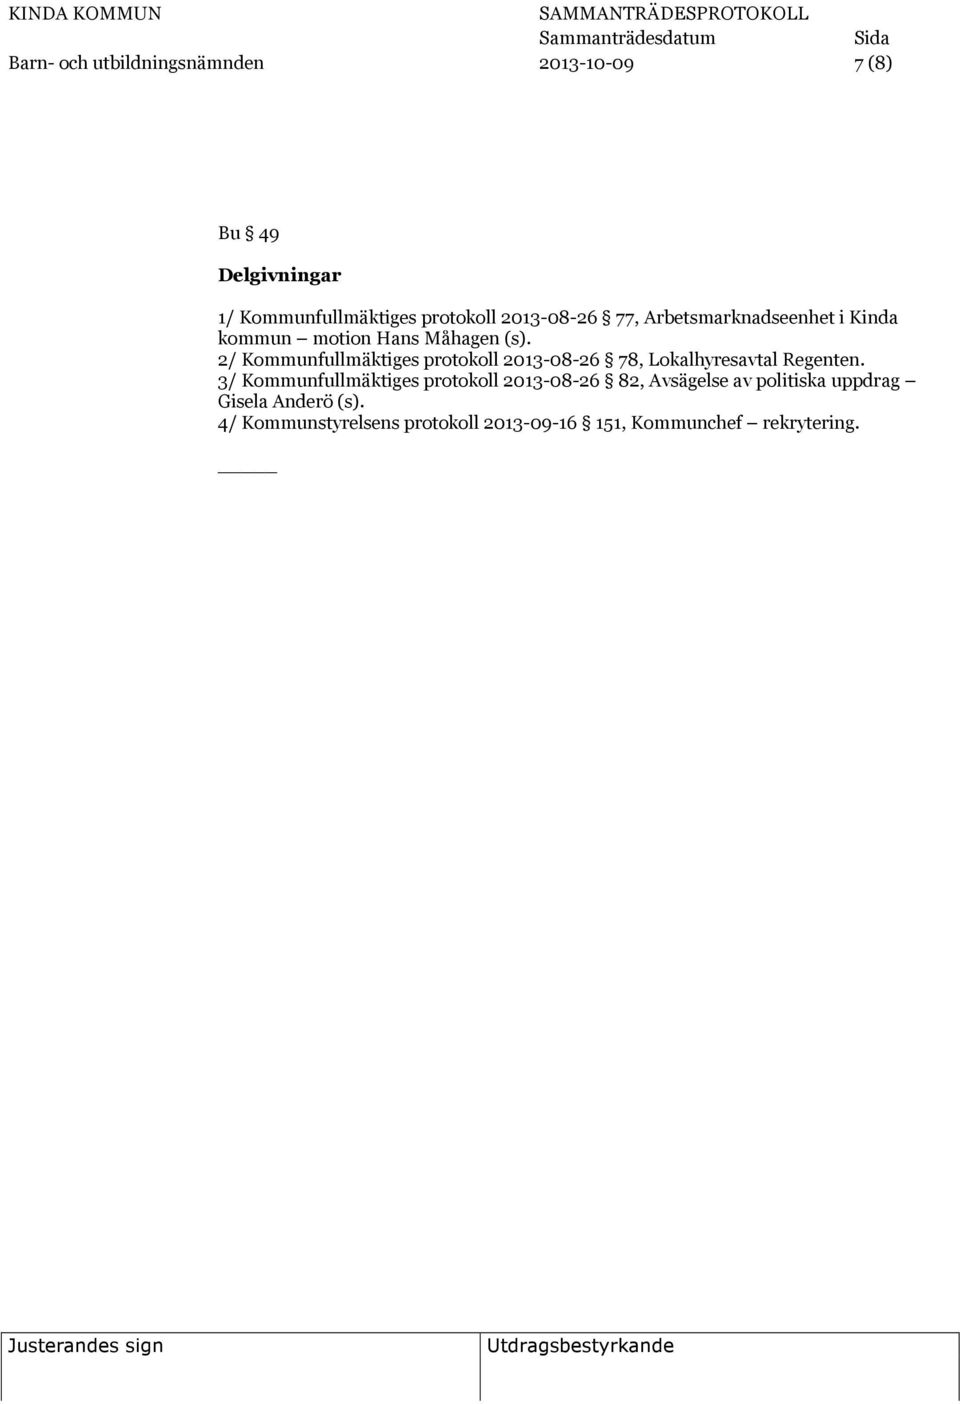 2/ Kommunfullmäktiges protokoll 2013-08-26 78, Lokalhyresavtal Regenten.